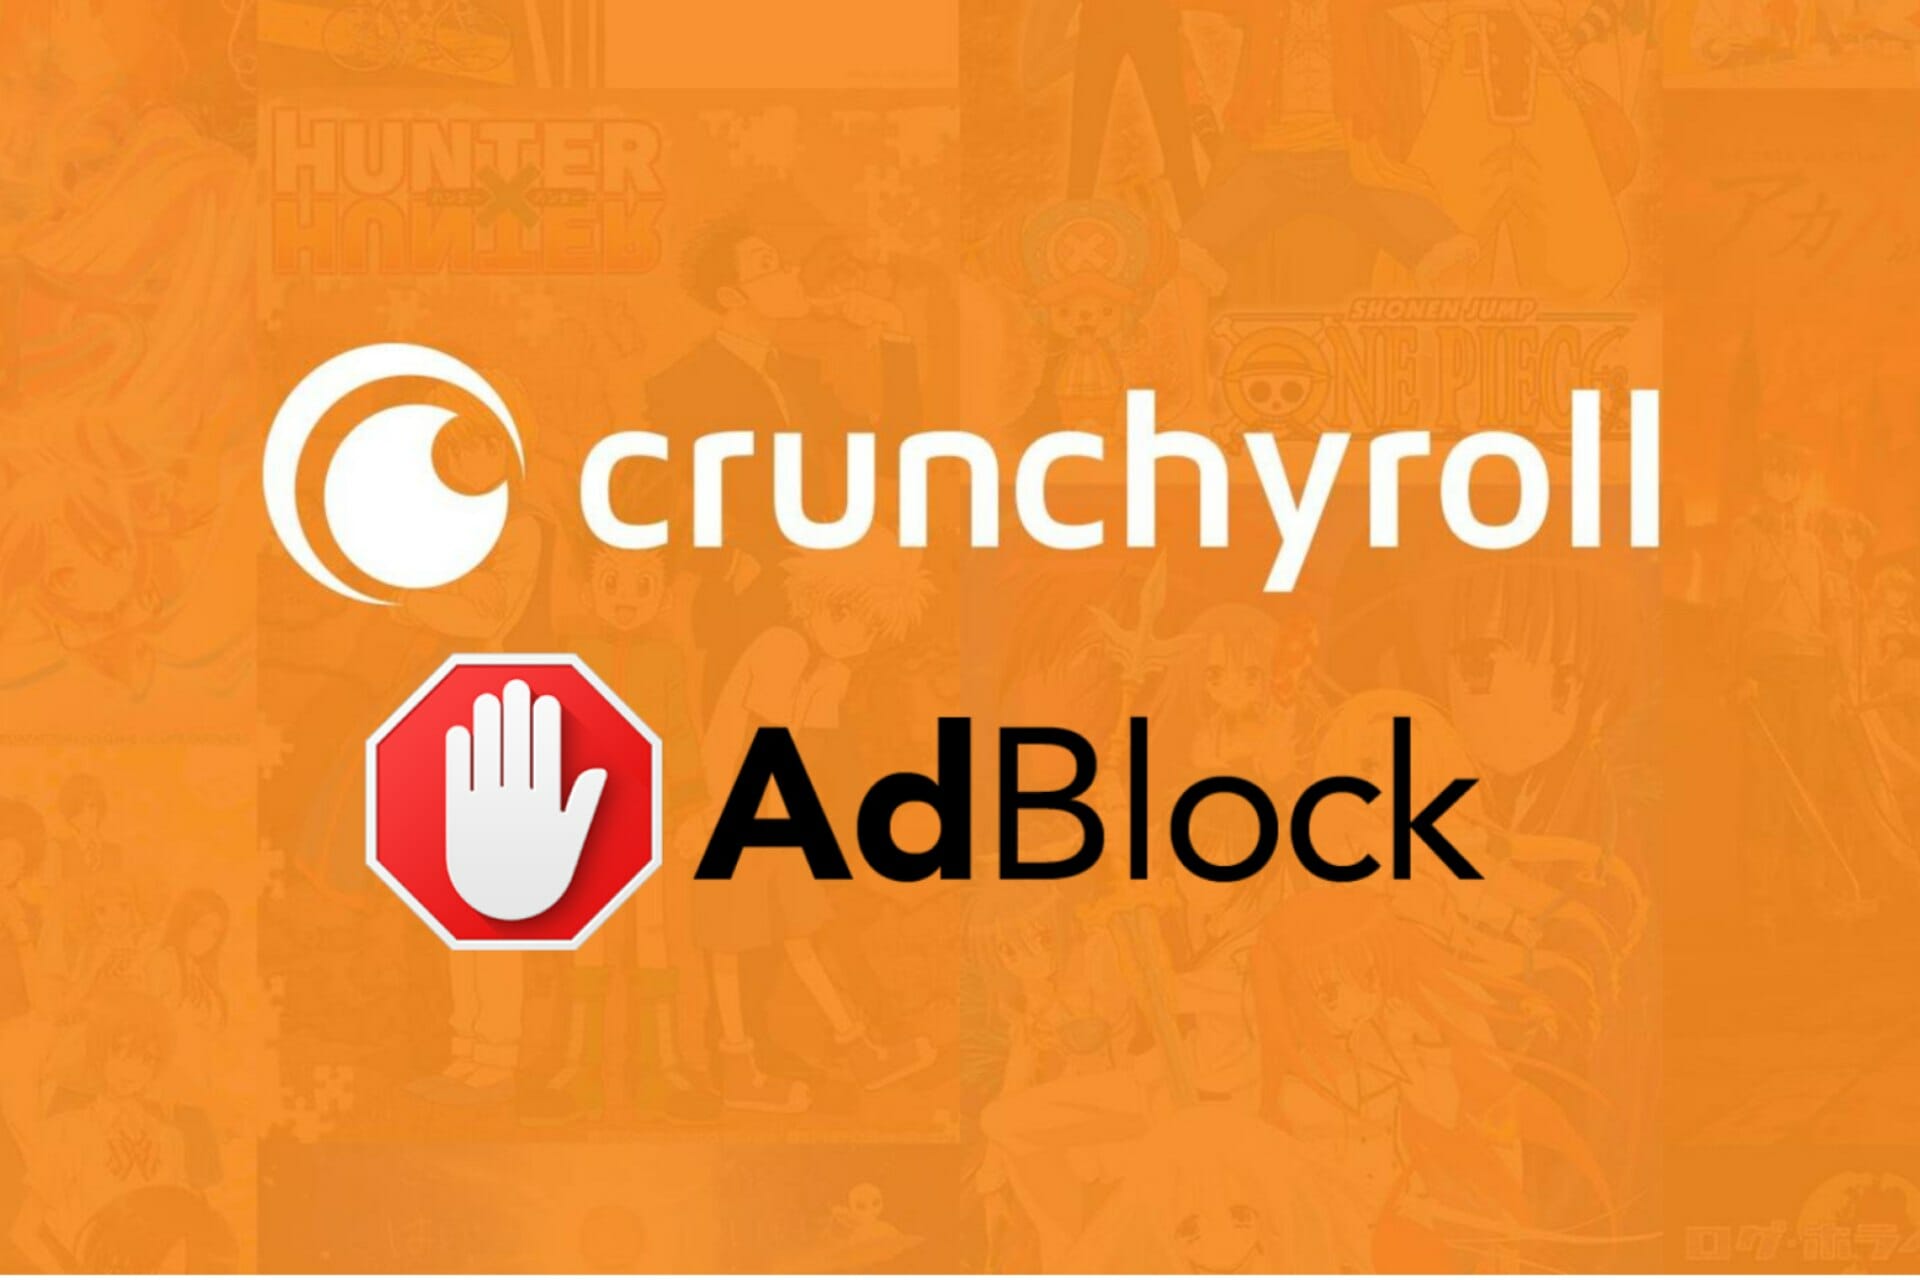 adblock doesn't work on crunchyroll